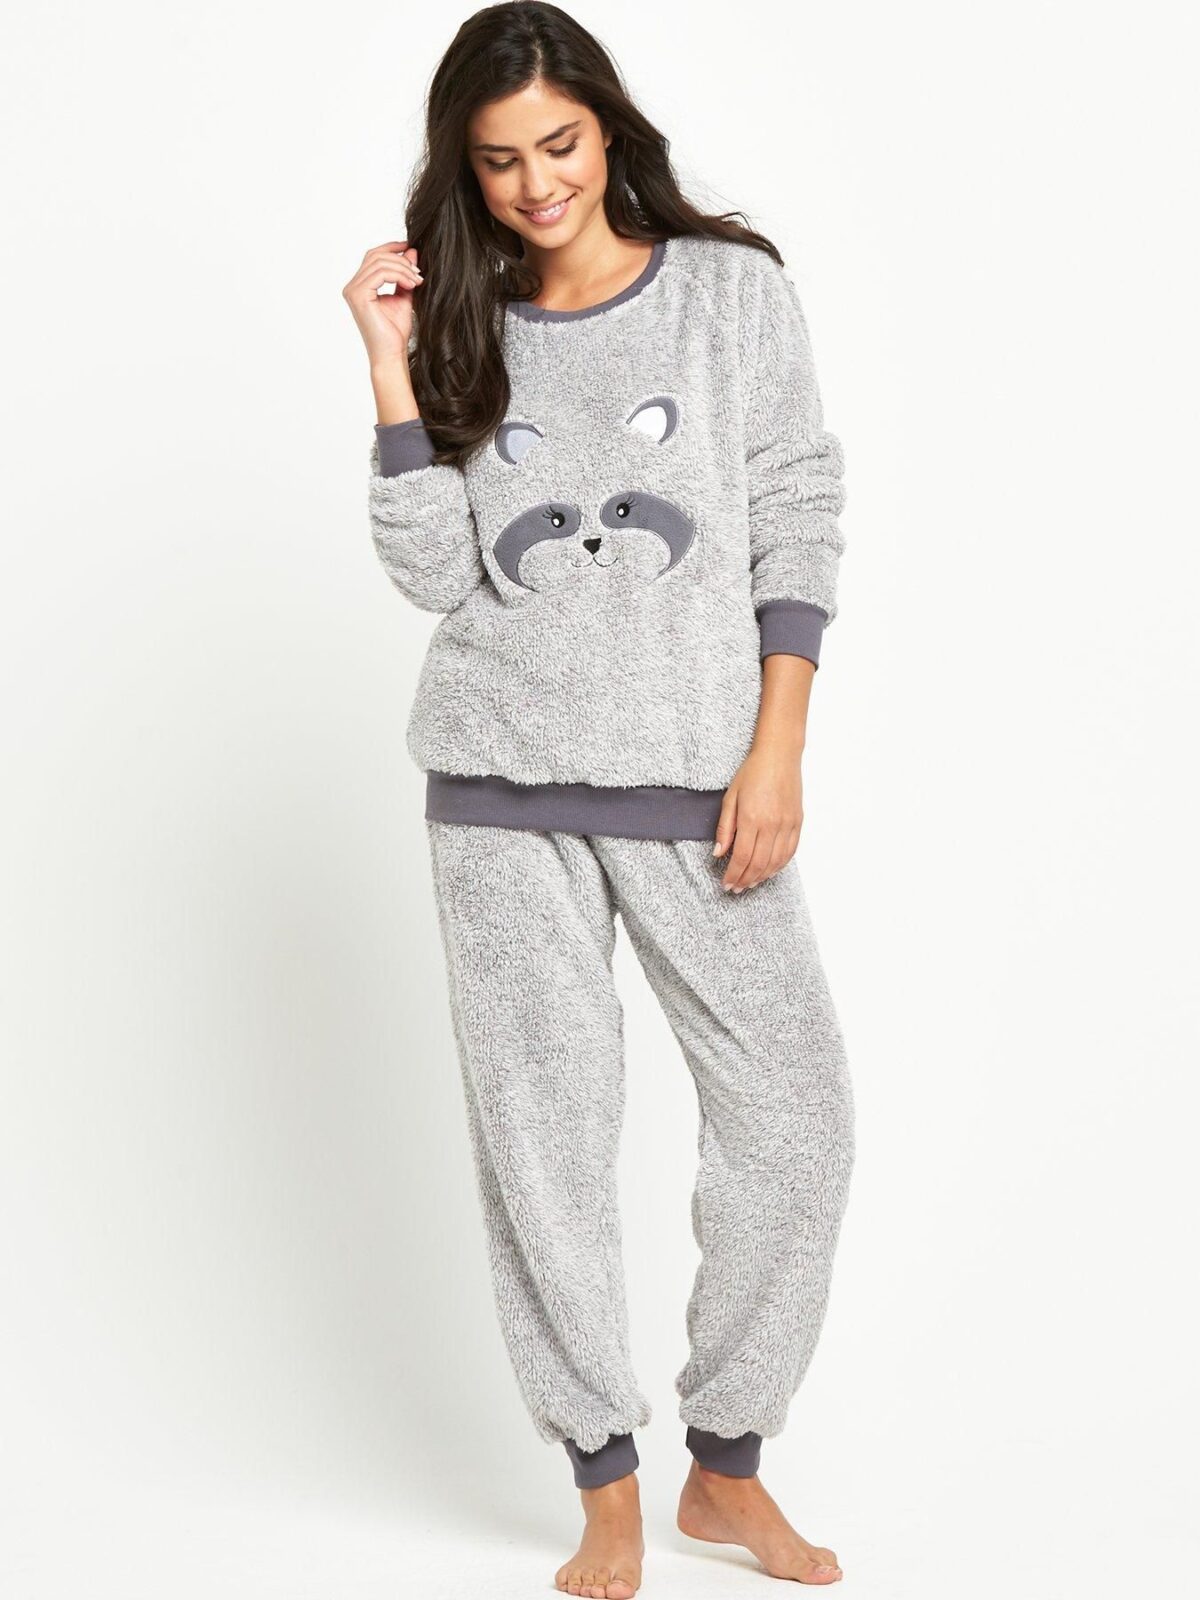 Women’s fleece pajamas